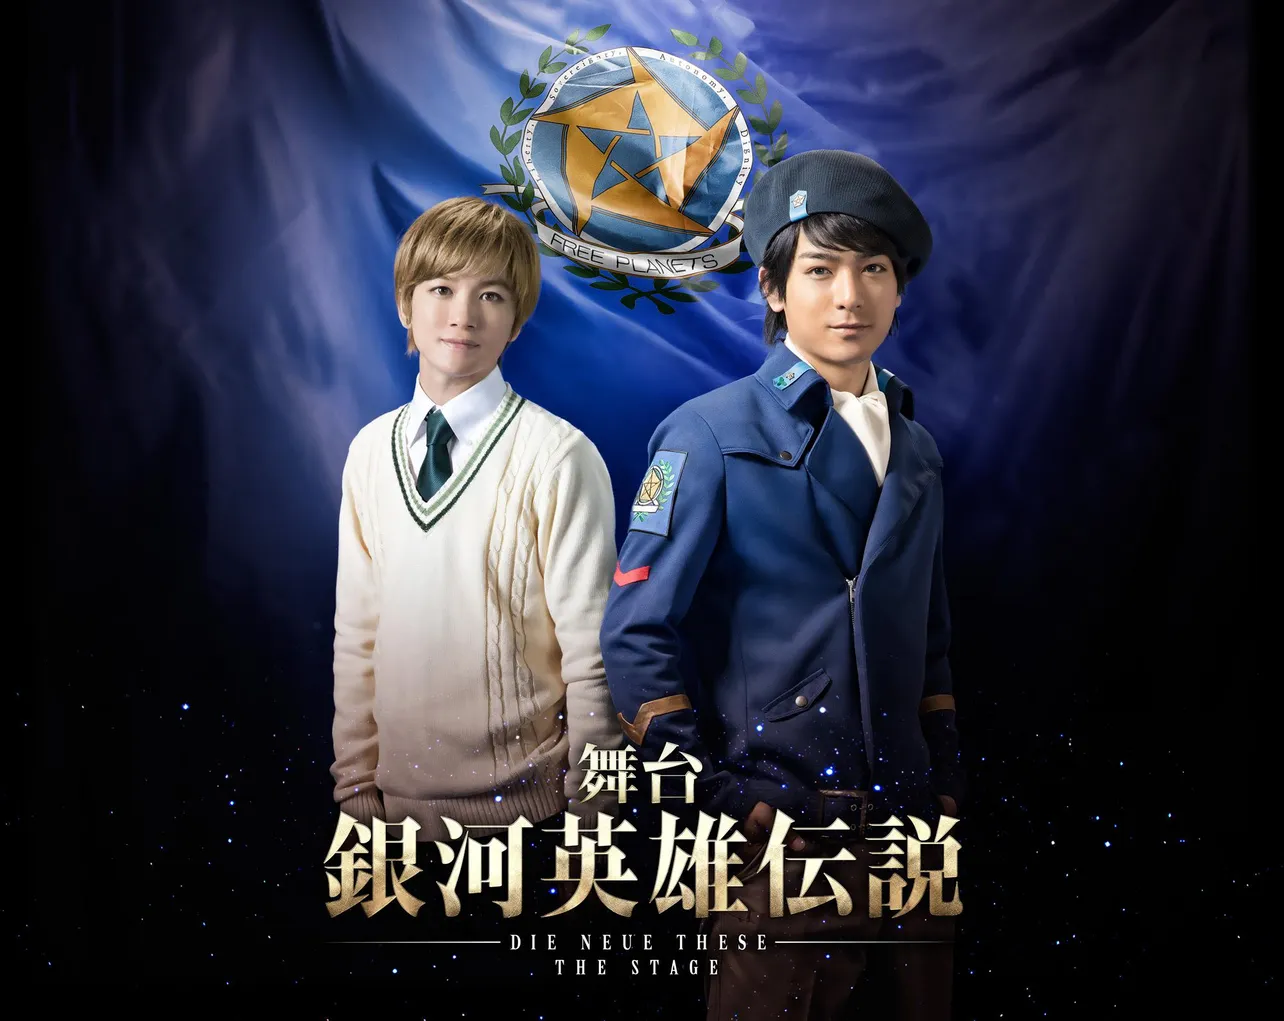 ヤン役の小早川俊輔(写真右)と、ユリアン役の小西成弥(写真左)のビジュアルが公開